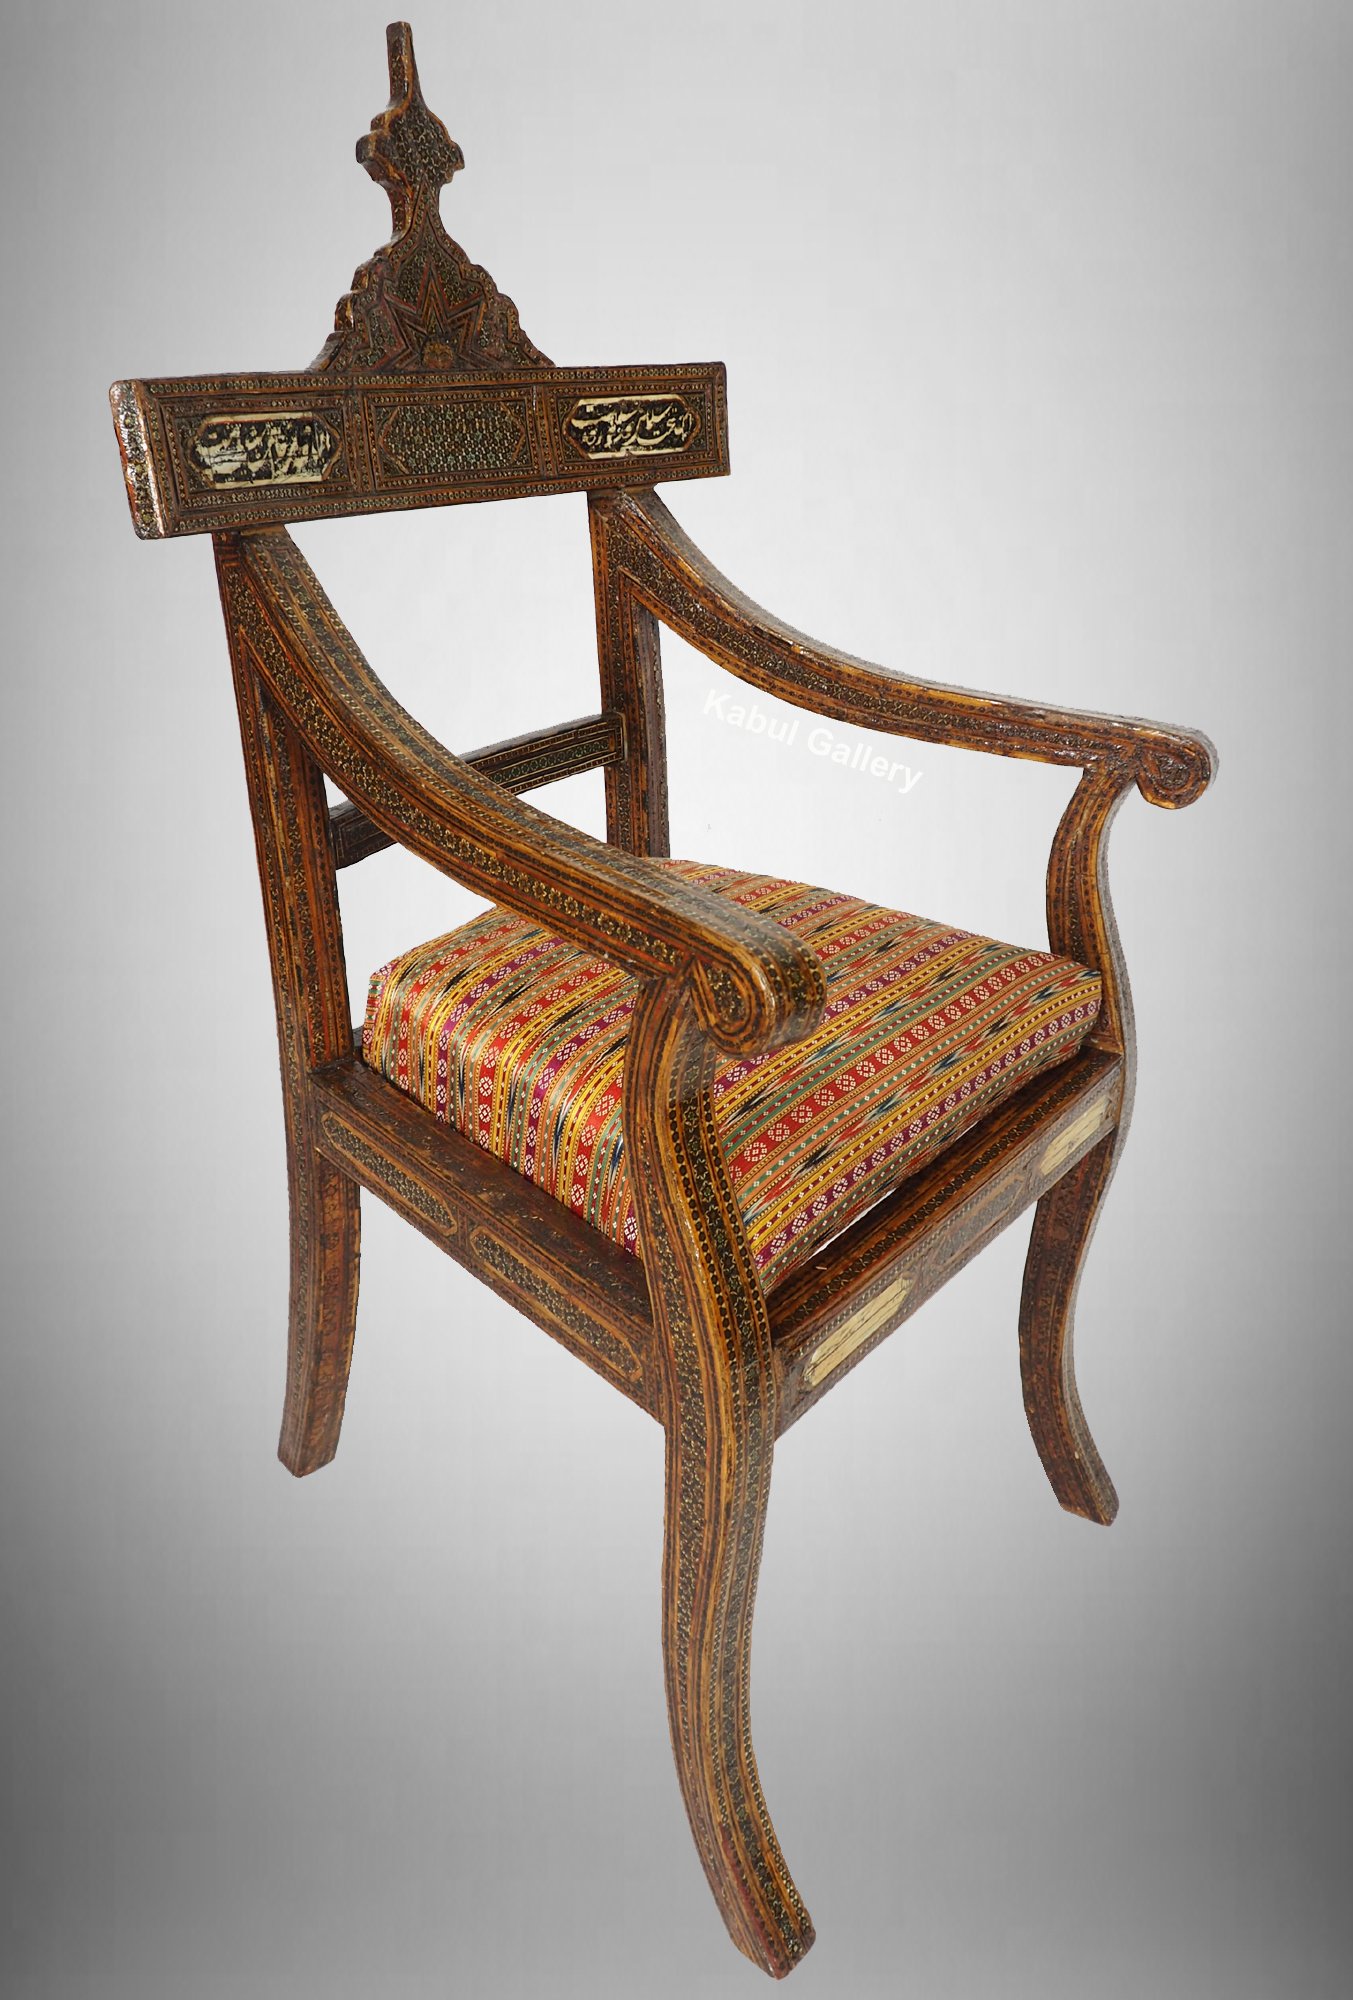 A Qajar (khatamkari technique)  chair Persia, 19th Century No:D